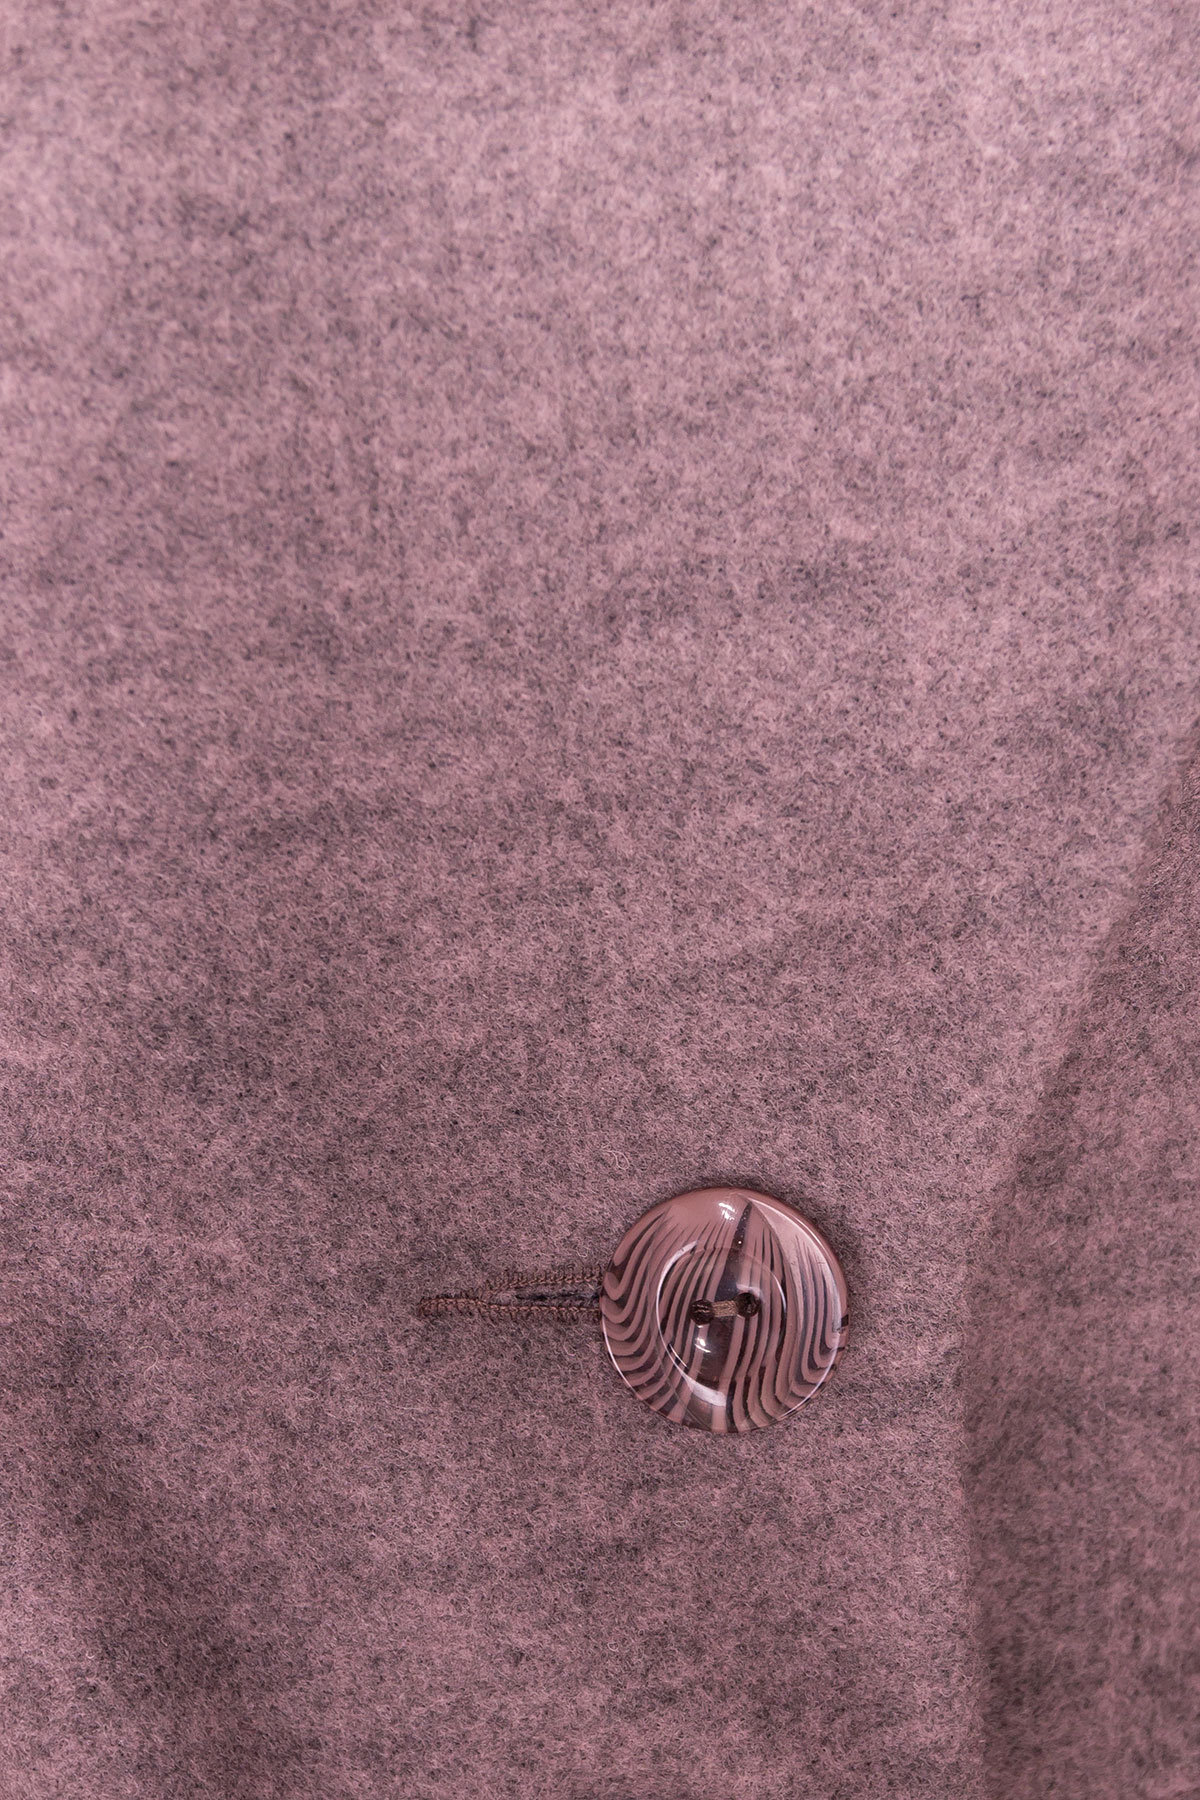 Удлиненное пальто на зиму Габриэлла 4151 АРТ. 20311 Цвет: Какао - фото 6, интернет магазин tm-modus.ru